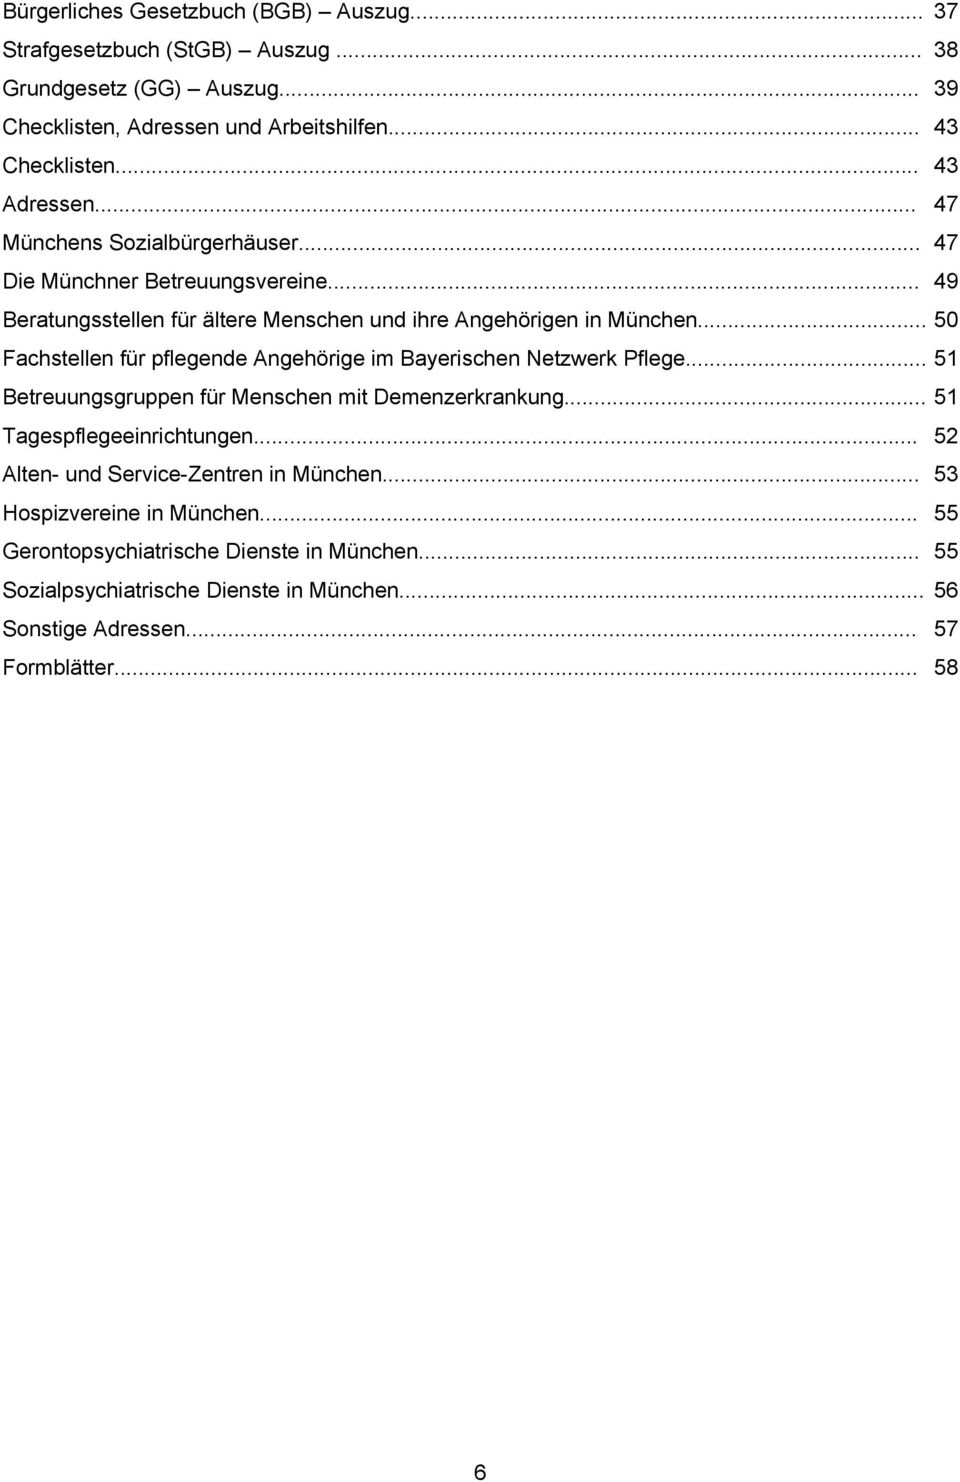 .. 50 Fachstellen für pflegende Angehörige im Bayerischen Netzwerk Pflege... 51 Betreuungsgruppen für Menschen mit Demenzerkrankung... 51 Tagespflegeeinrichtungen.